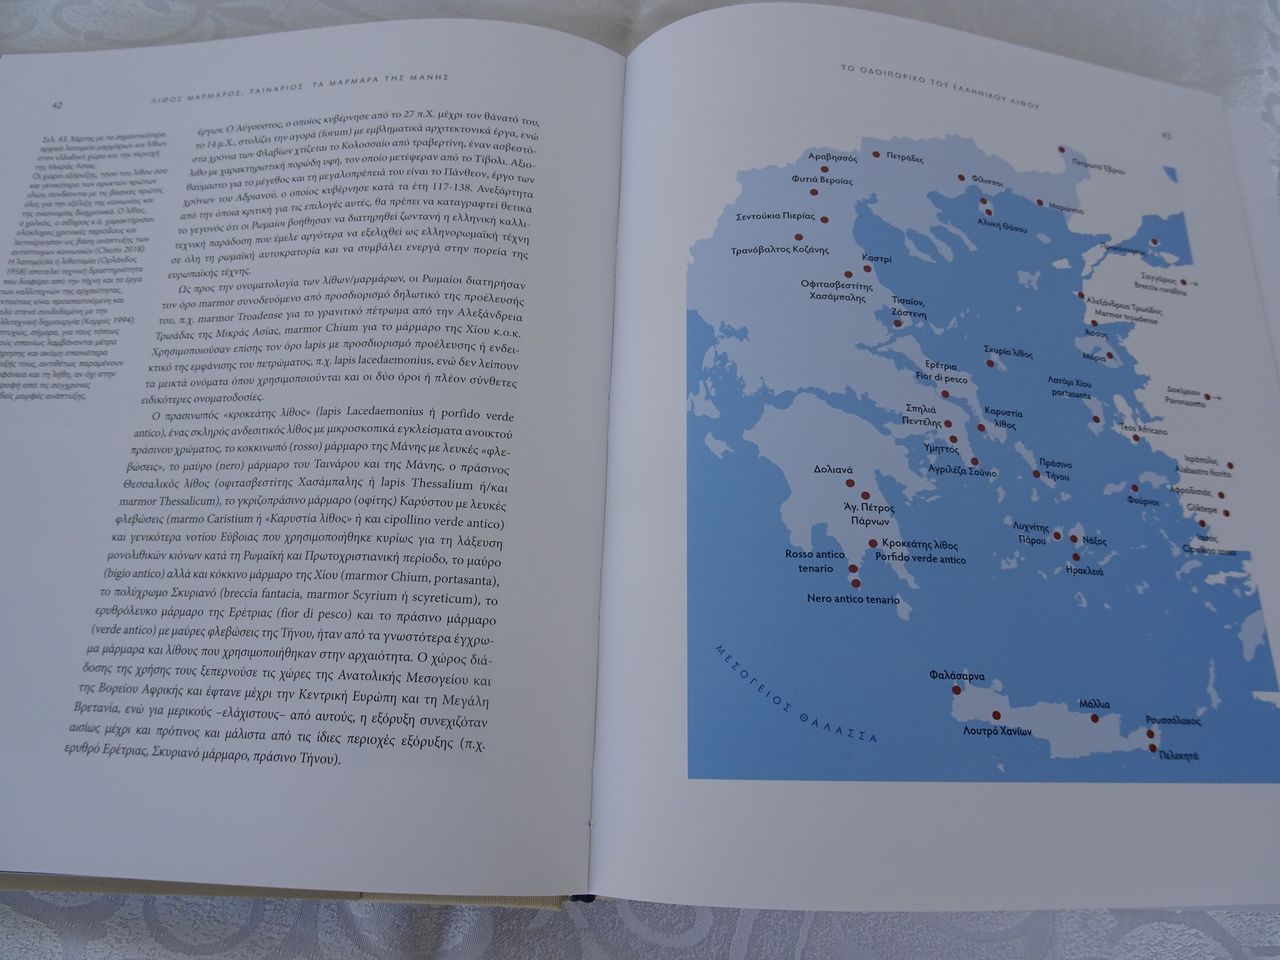 10. Ένας ενημερωτικός εποπτικός χάρτης με τις θέσεις των σημαντικότερων αρχαίων λατομείων μαρμάρων και λίθων στον Ελλαδικό χώρο και στο χώρο της Μικράς Ασίας.